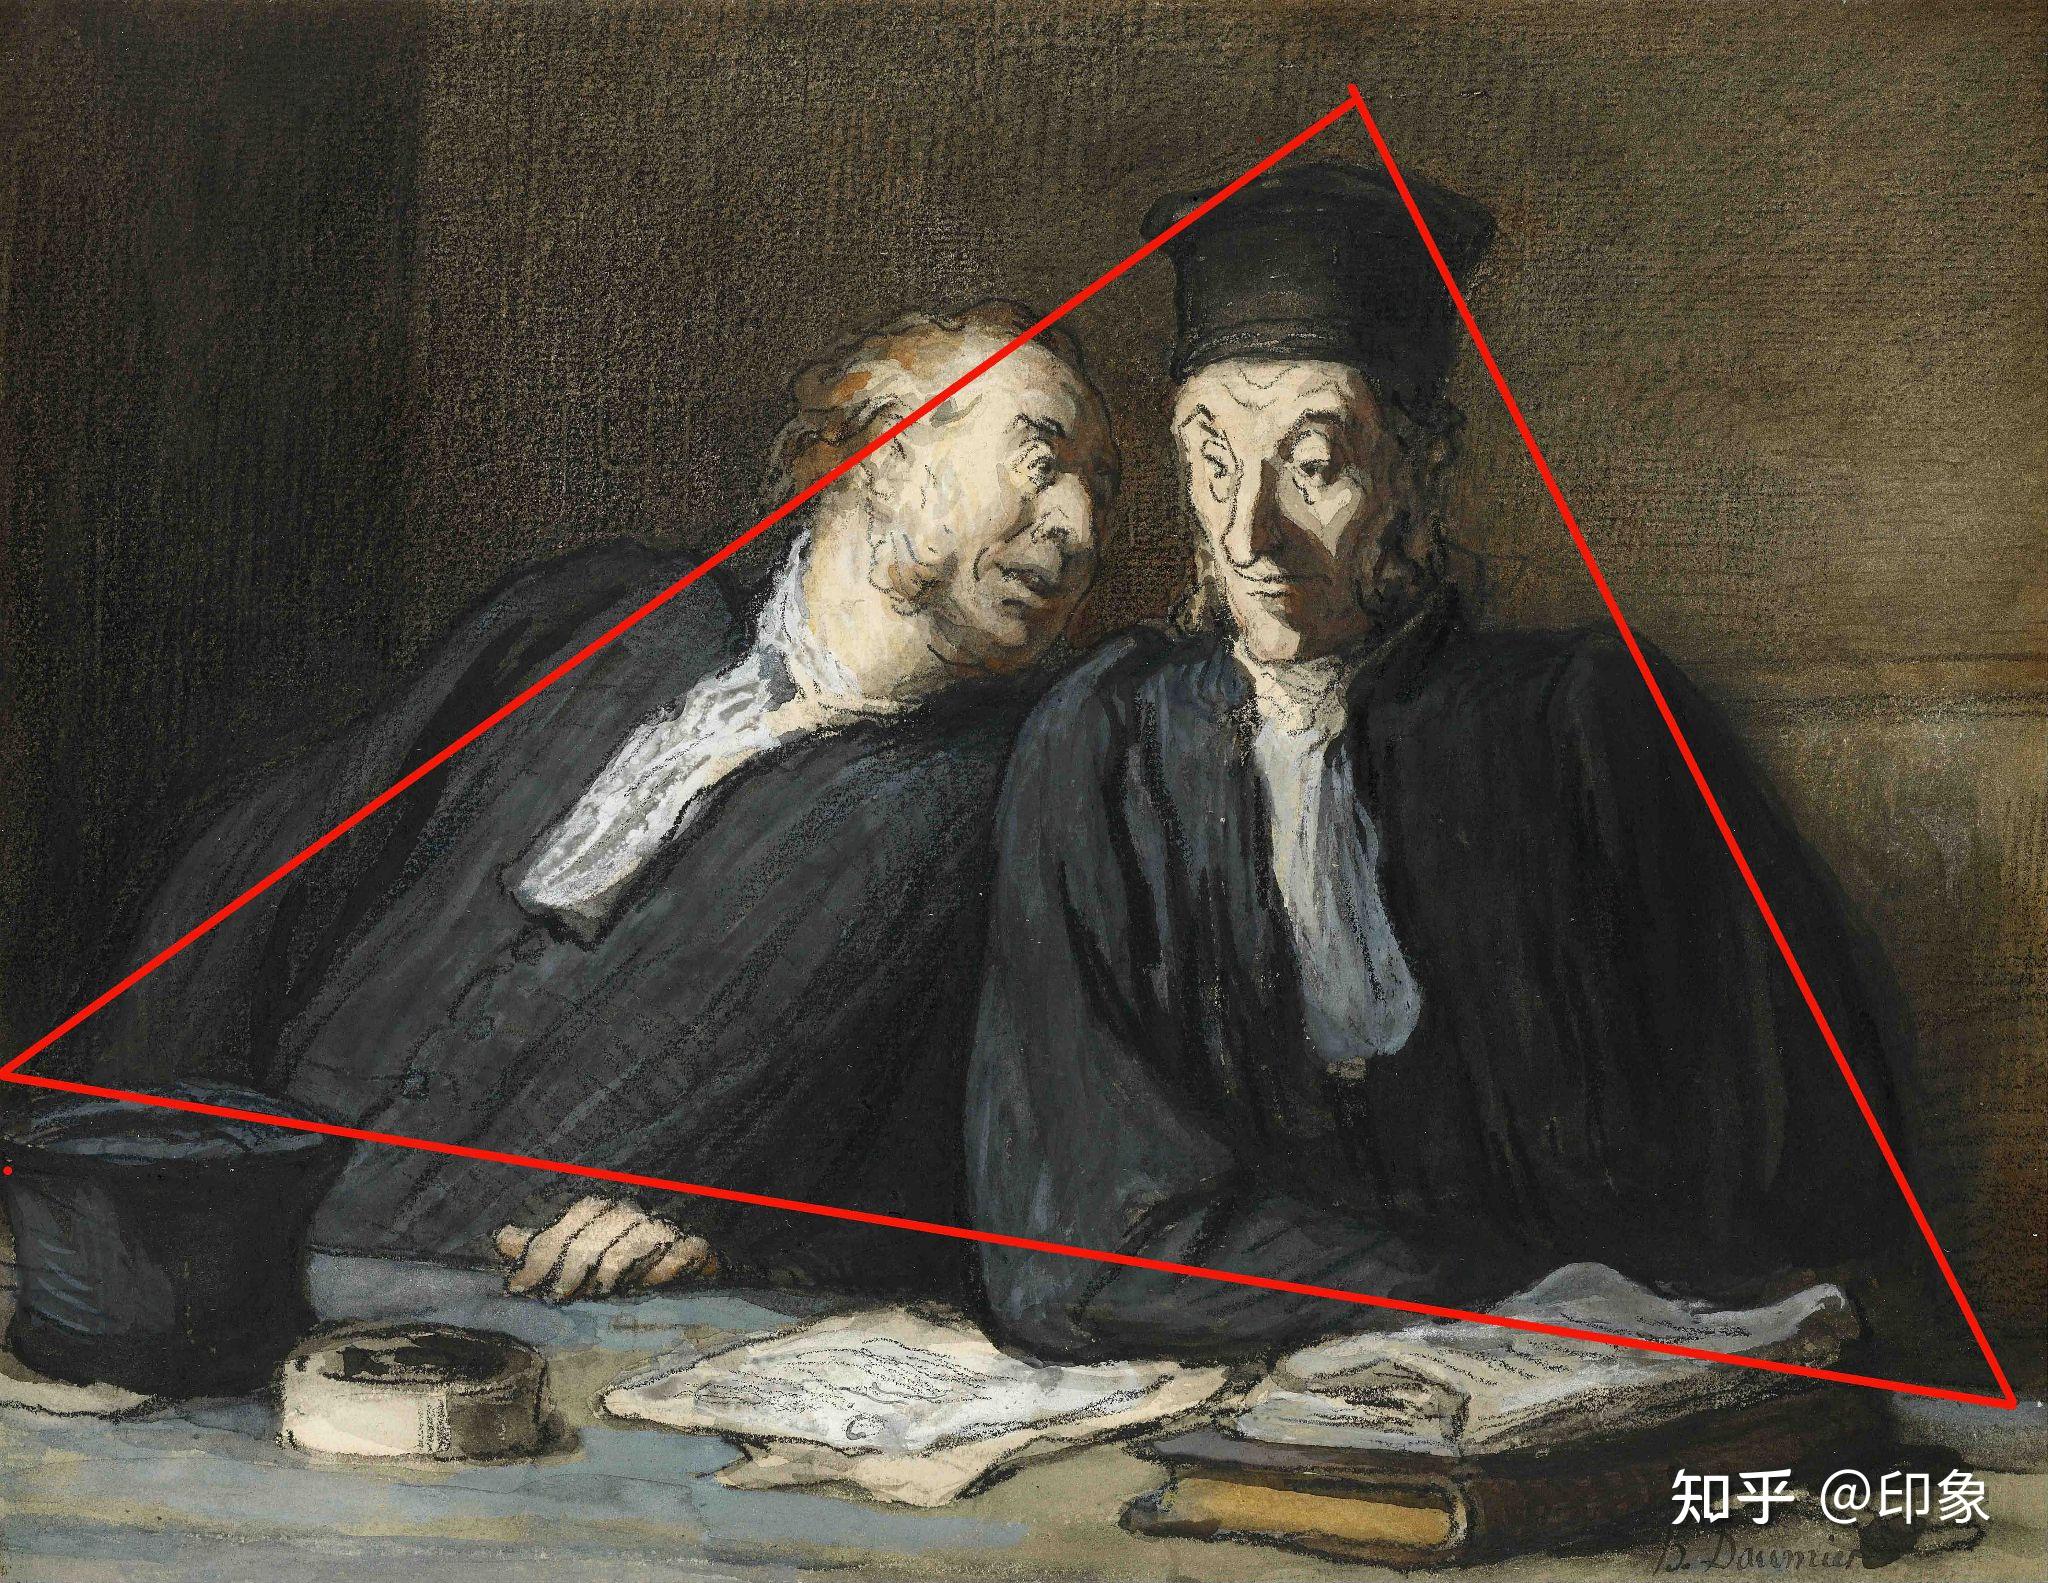 也用到了三角形构图如下图德国画家丢勒的作品